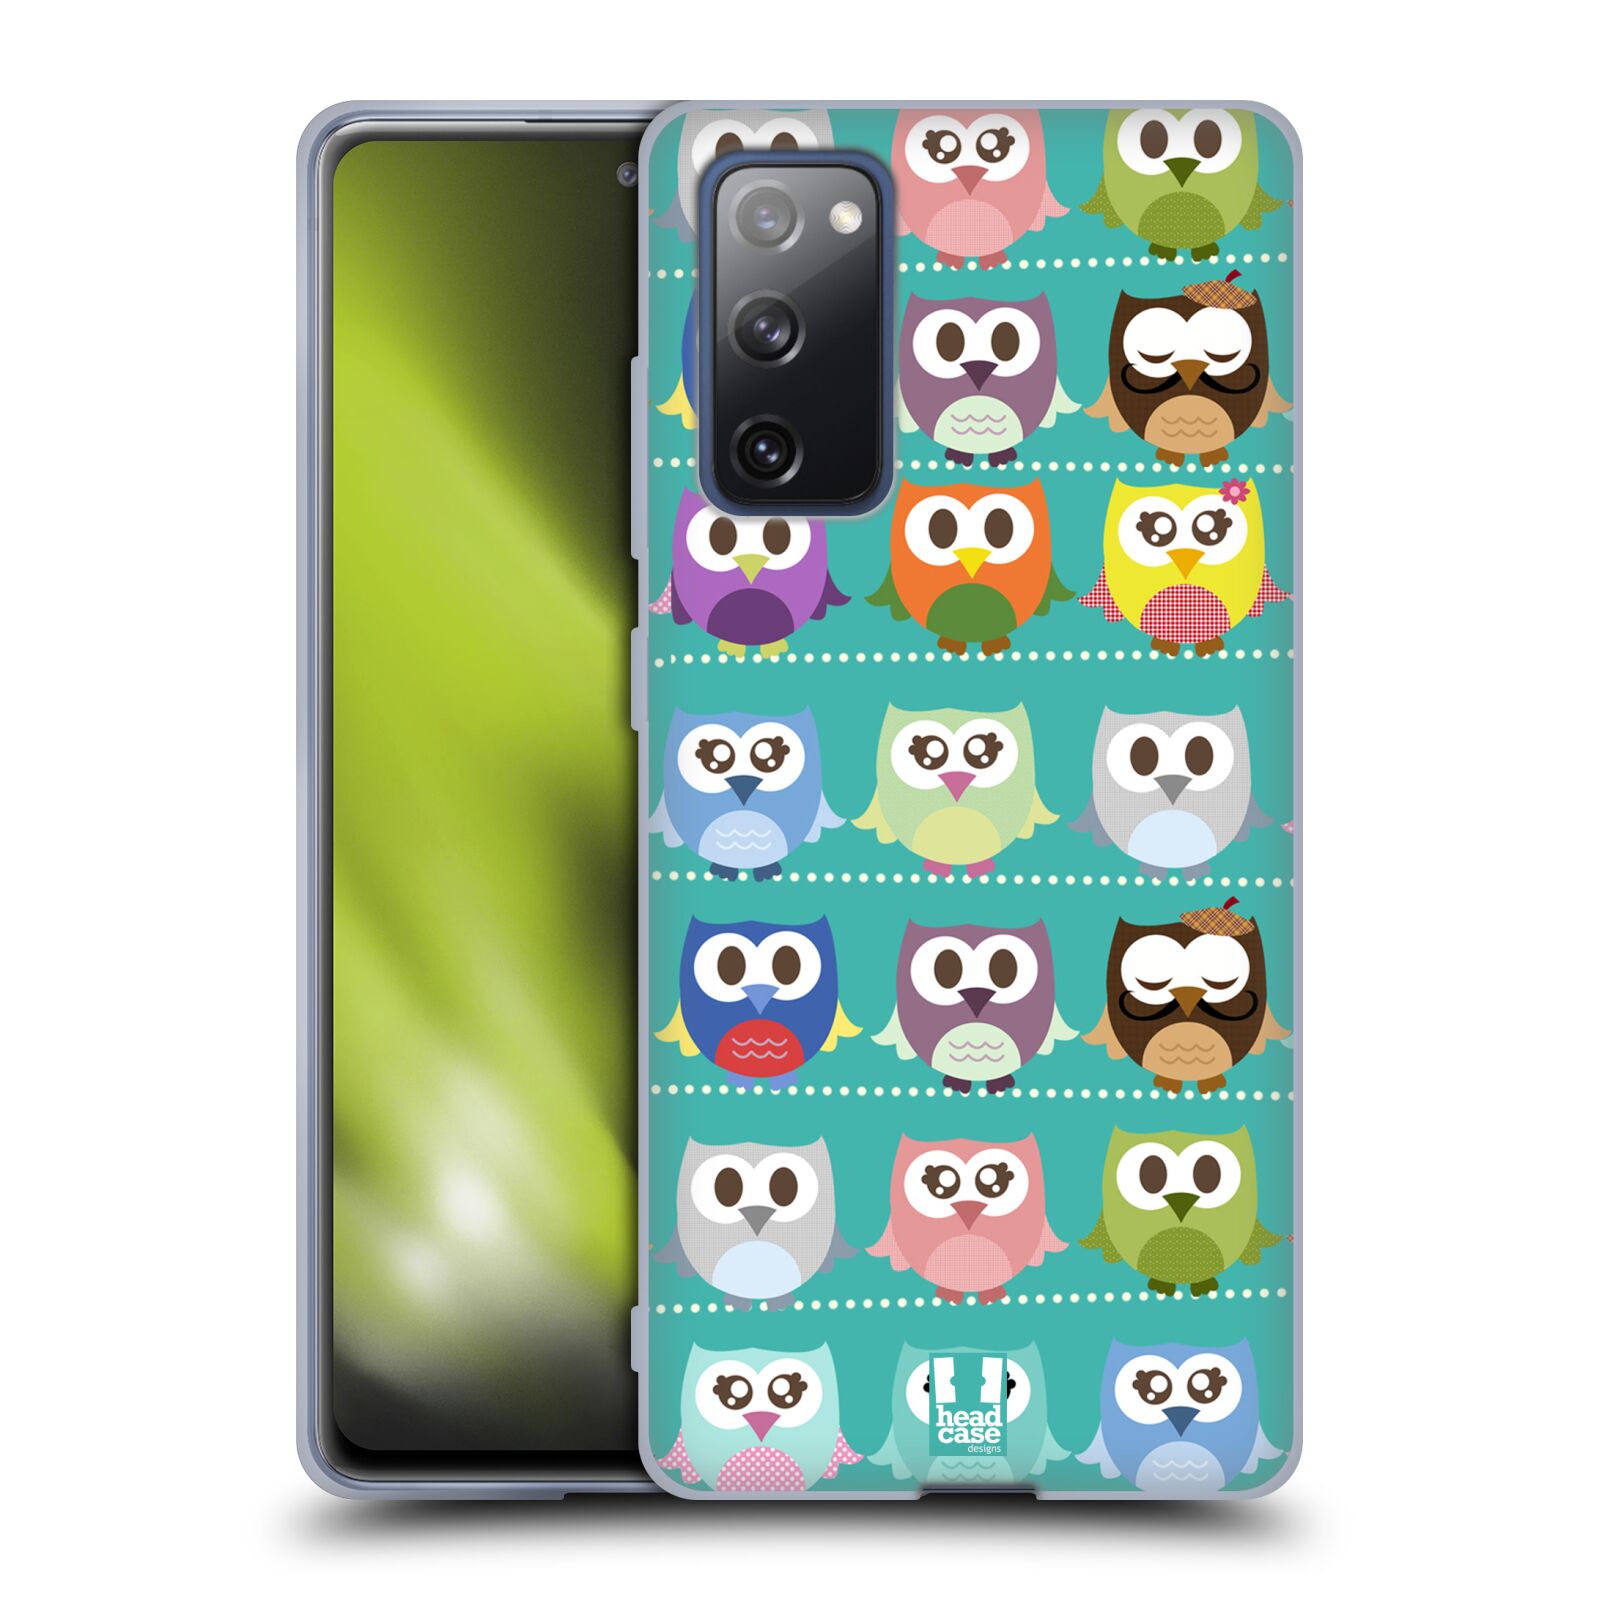 Plastový obal HEAD CASE na mobil Samsung Galaxy S20 FE / S20 FE 5G vzor Roztomilá sovička zelené sovičky